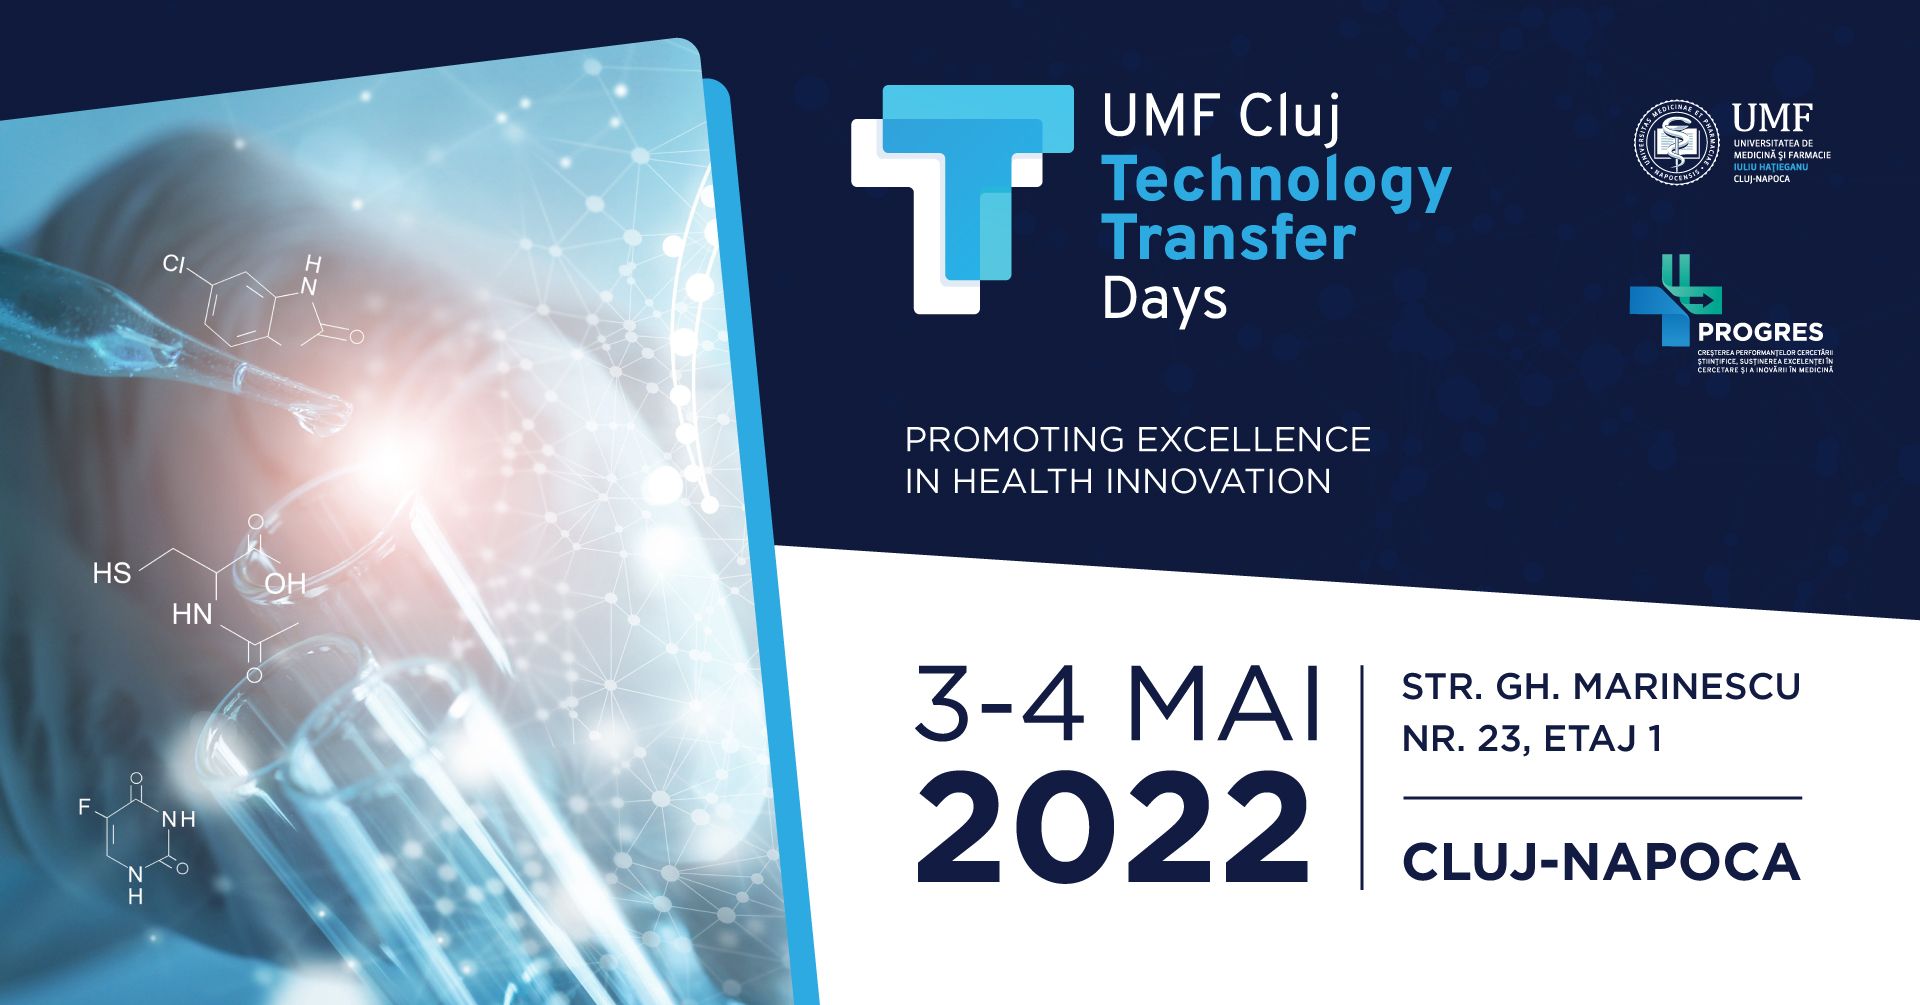 Brevete de invenție în domeniul sănătății, la UMF Cluj Technology Transfer Days